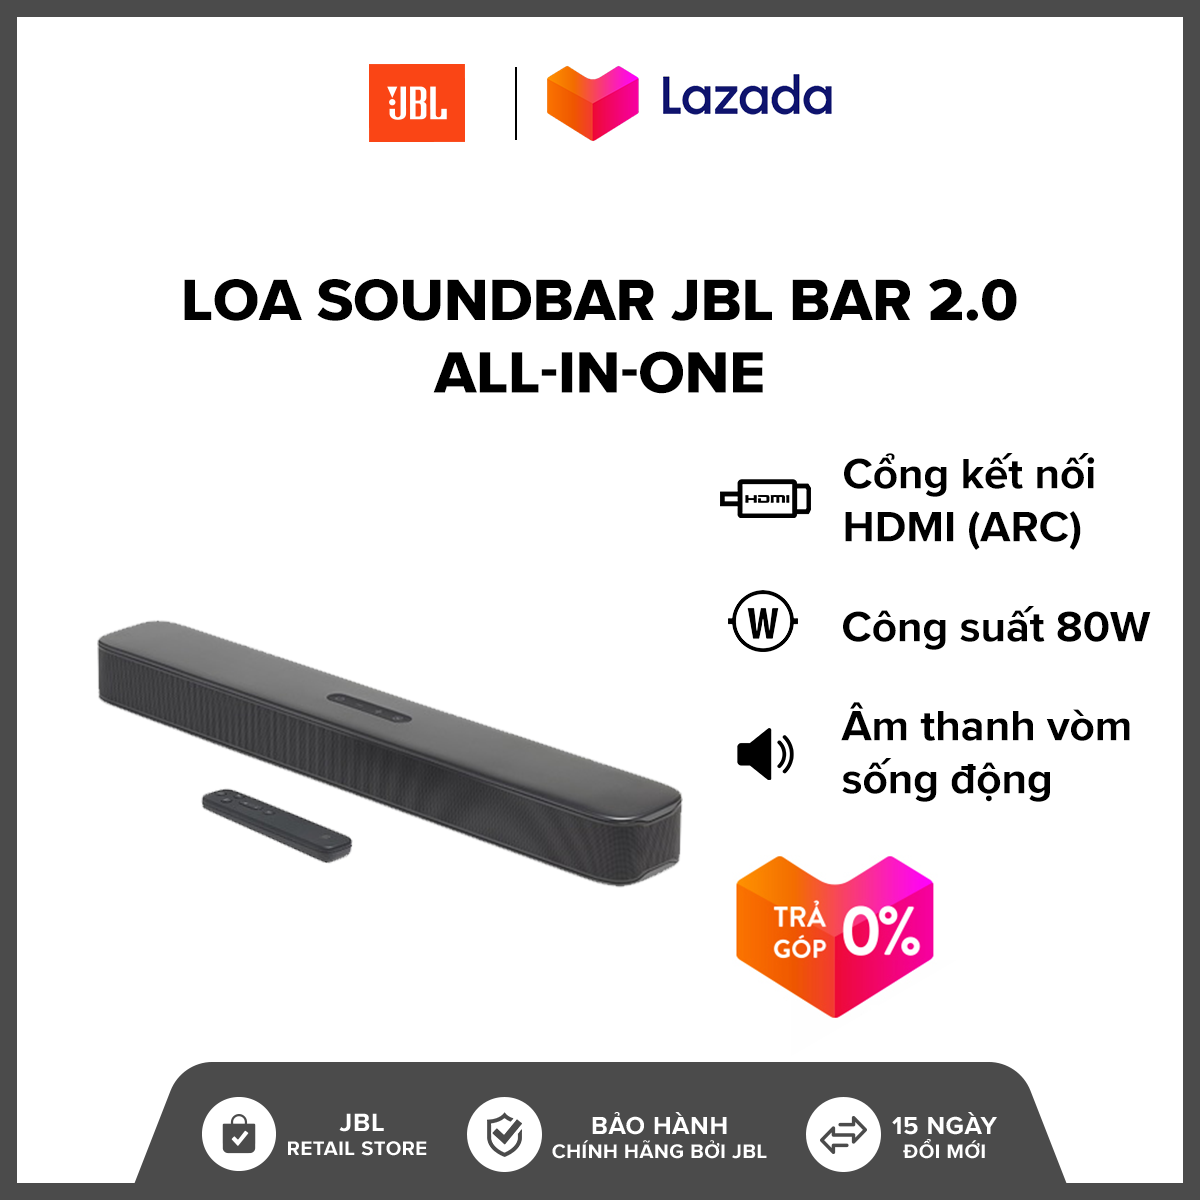 [TRẢ GÓP 0%] Loa Soundbar JBL Bar 2.0 All-in-one l Công suất: 80W l